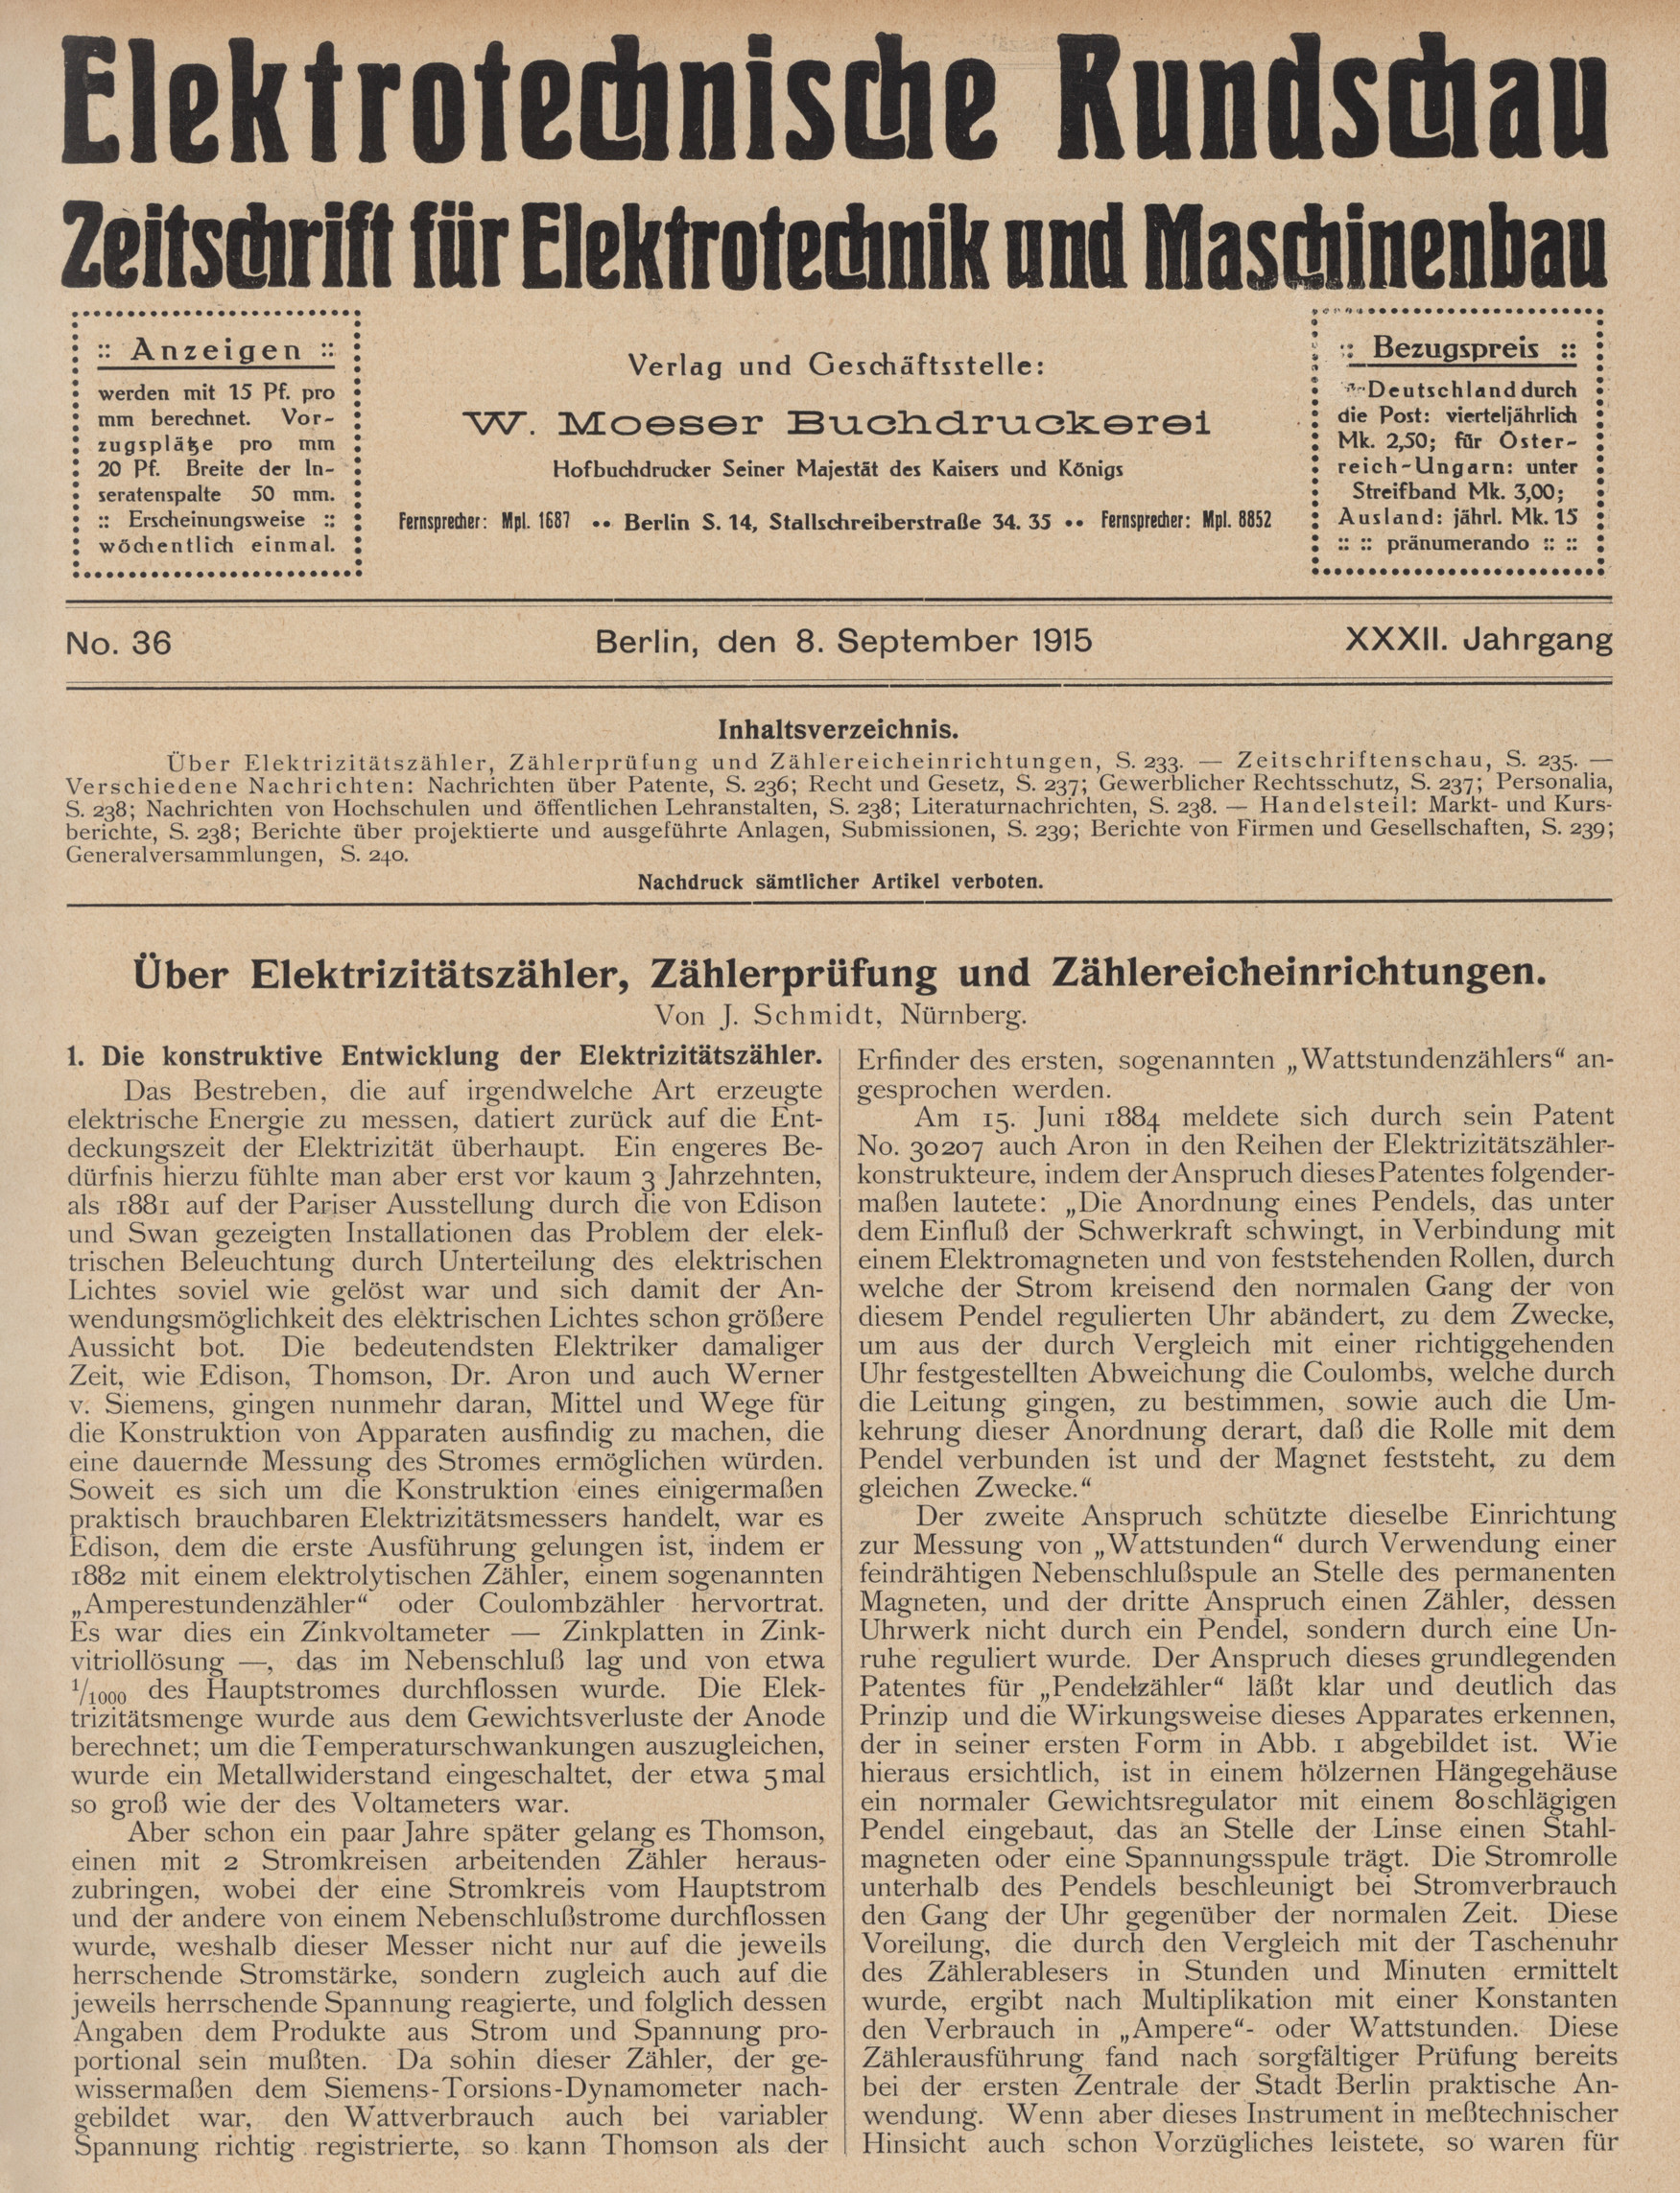 Elektrotechnische Rundschau : Zeitschrift für Elektrotechnik und Maschinenbau + Polytechnische Rundschau, No. 36, XXXII. Jahrgang